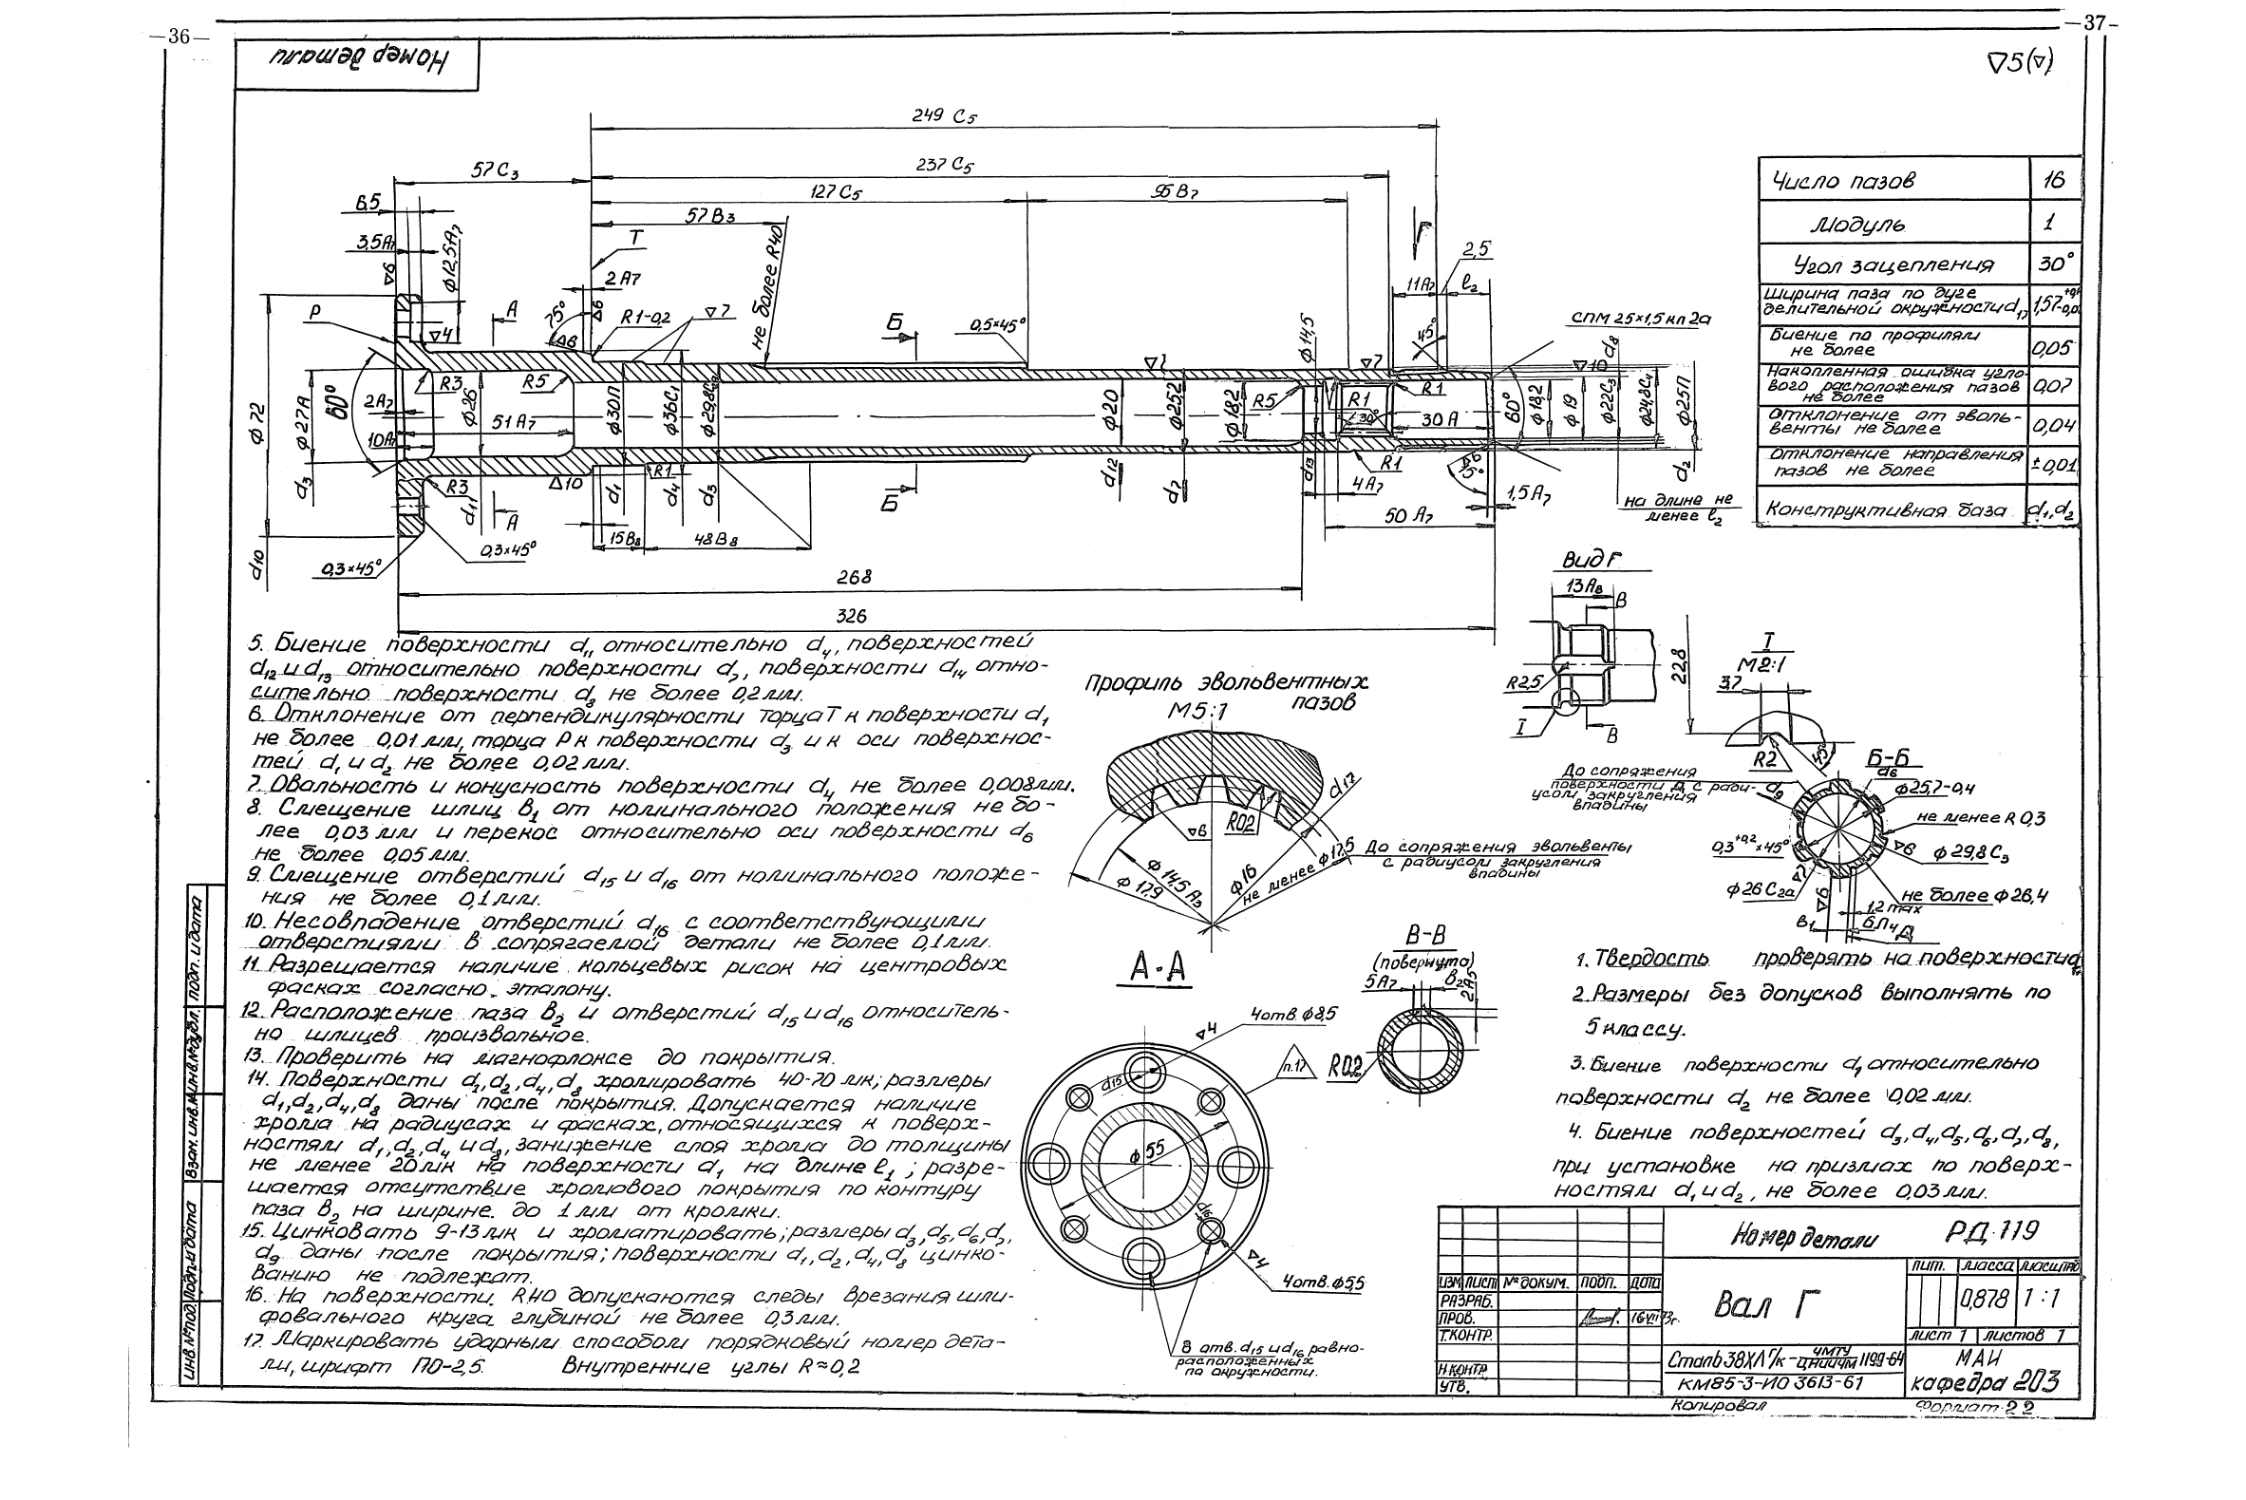 6. Рабочие чертежи деталей ТНА двигателя РД-119